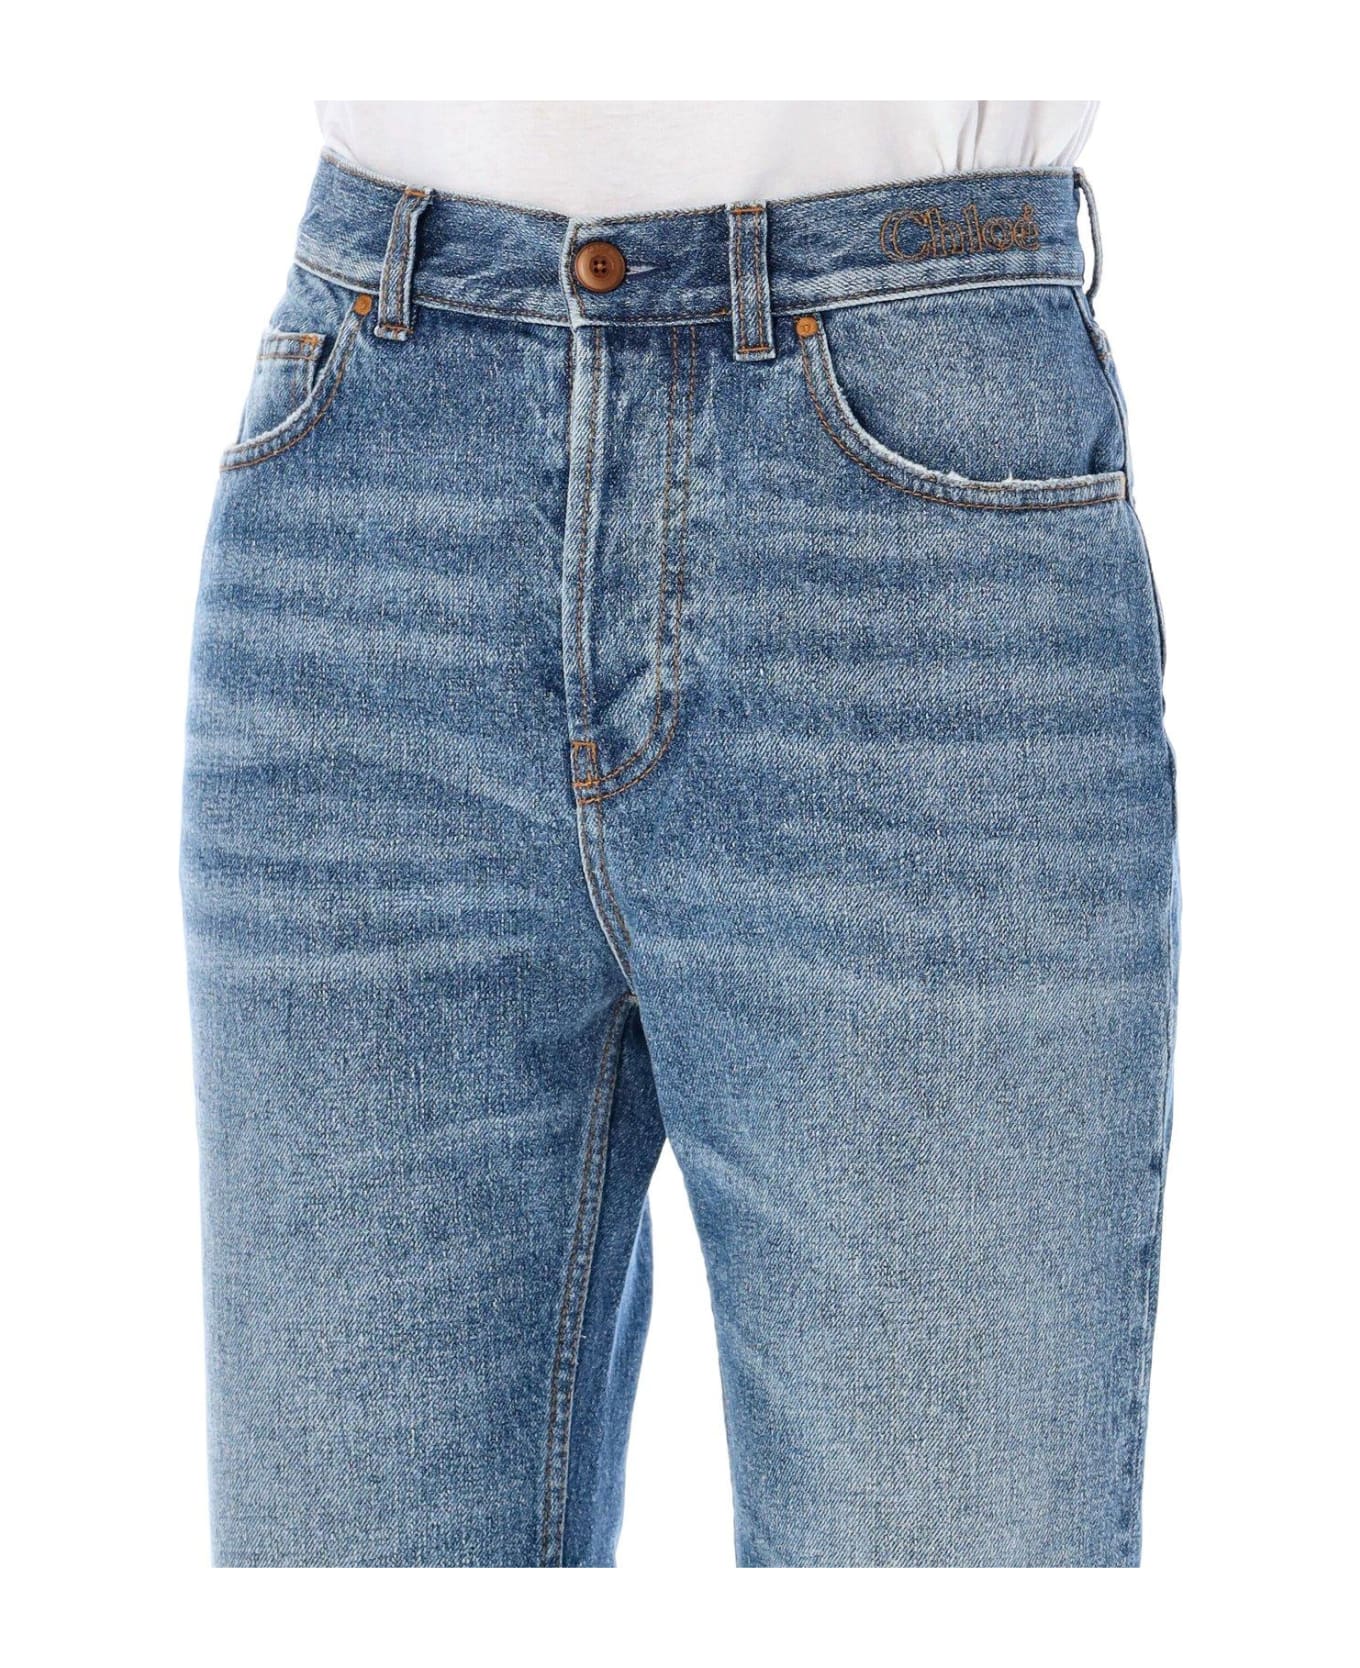 Chloé Raw Cut Denim Jeans - FOGGY BLUE